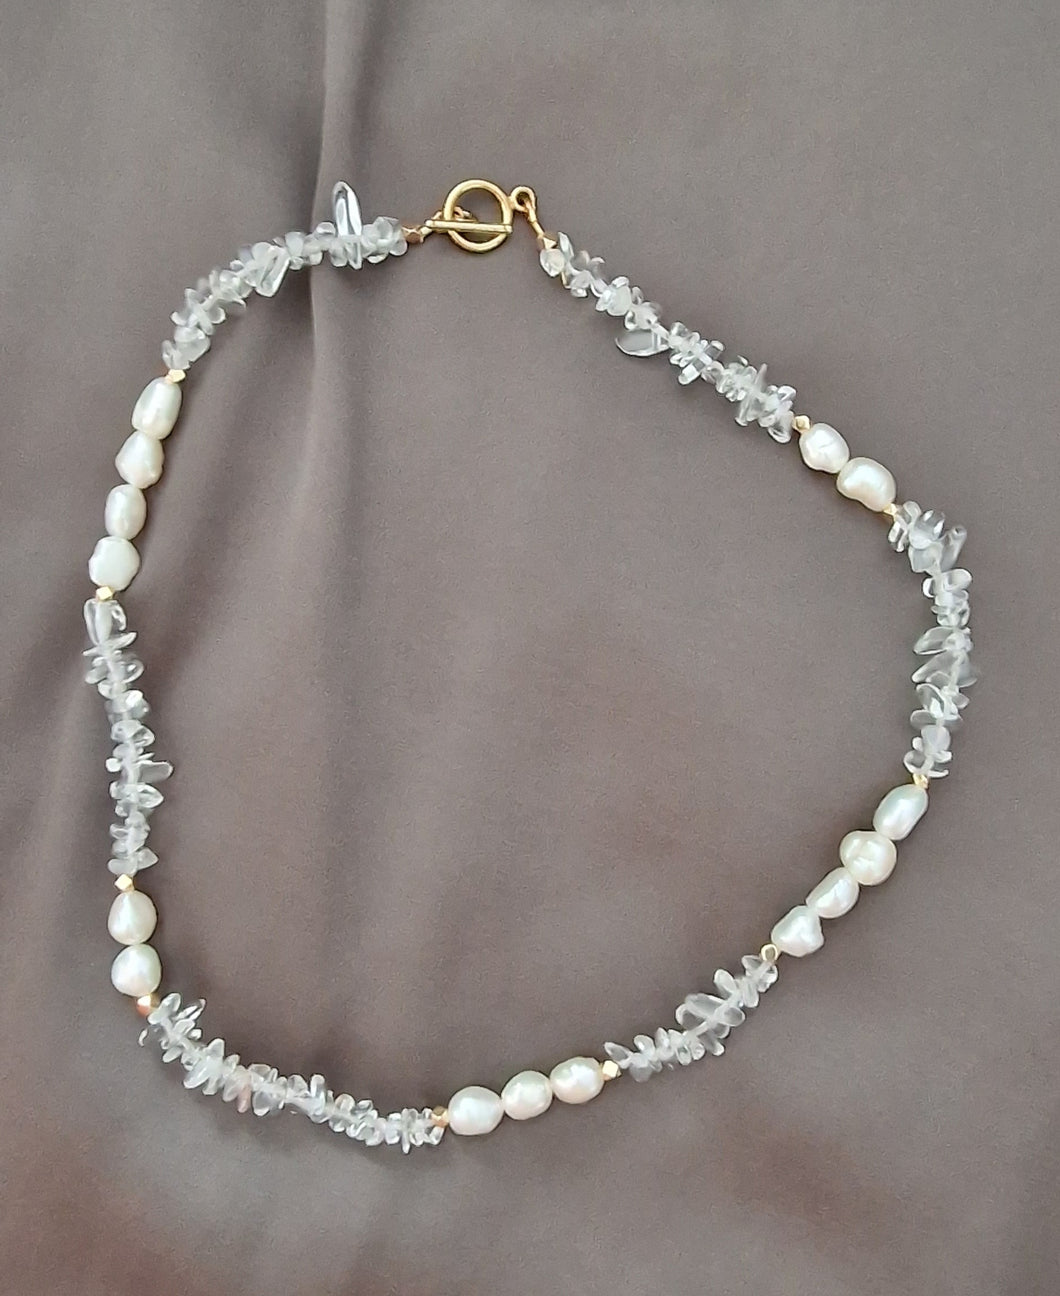 Cristallo Pearls Necklace